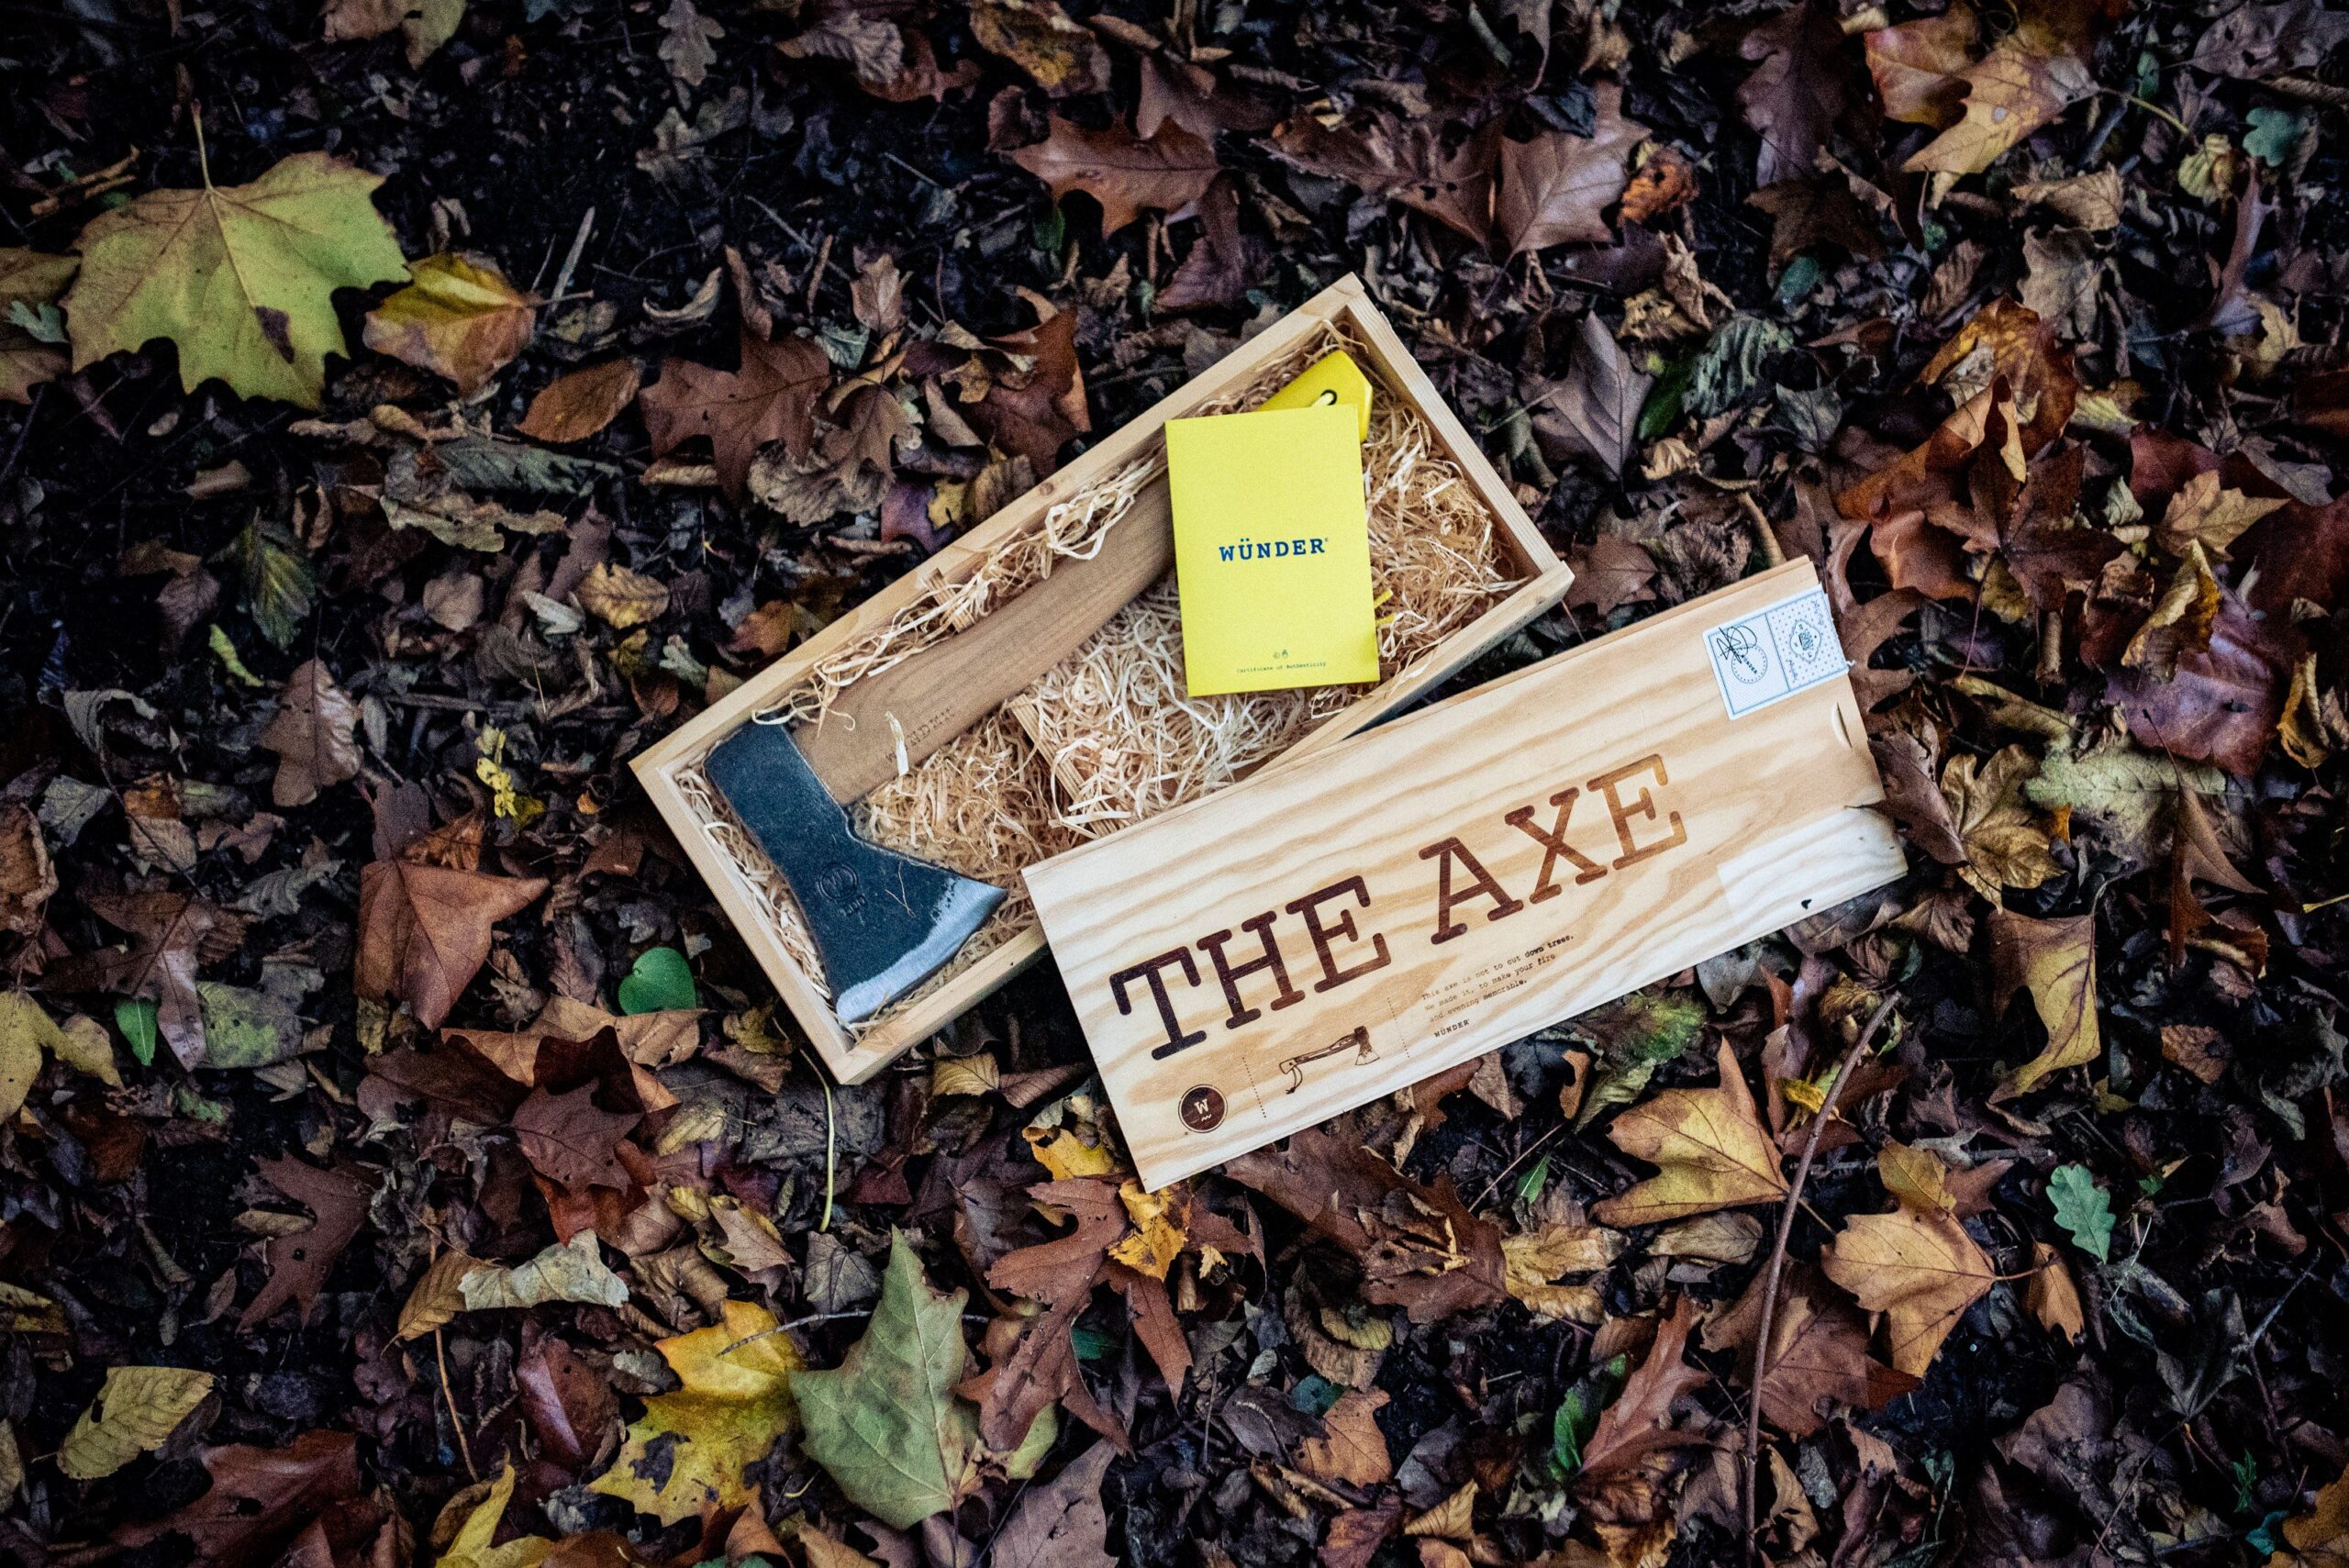 The axe